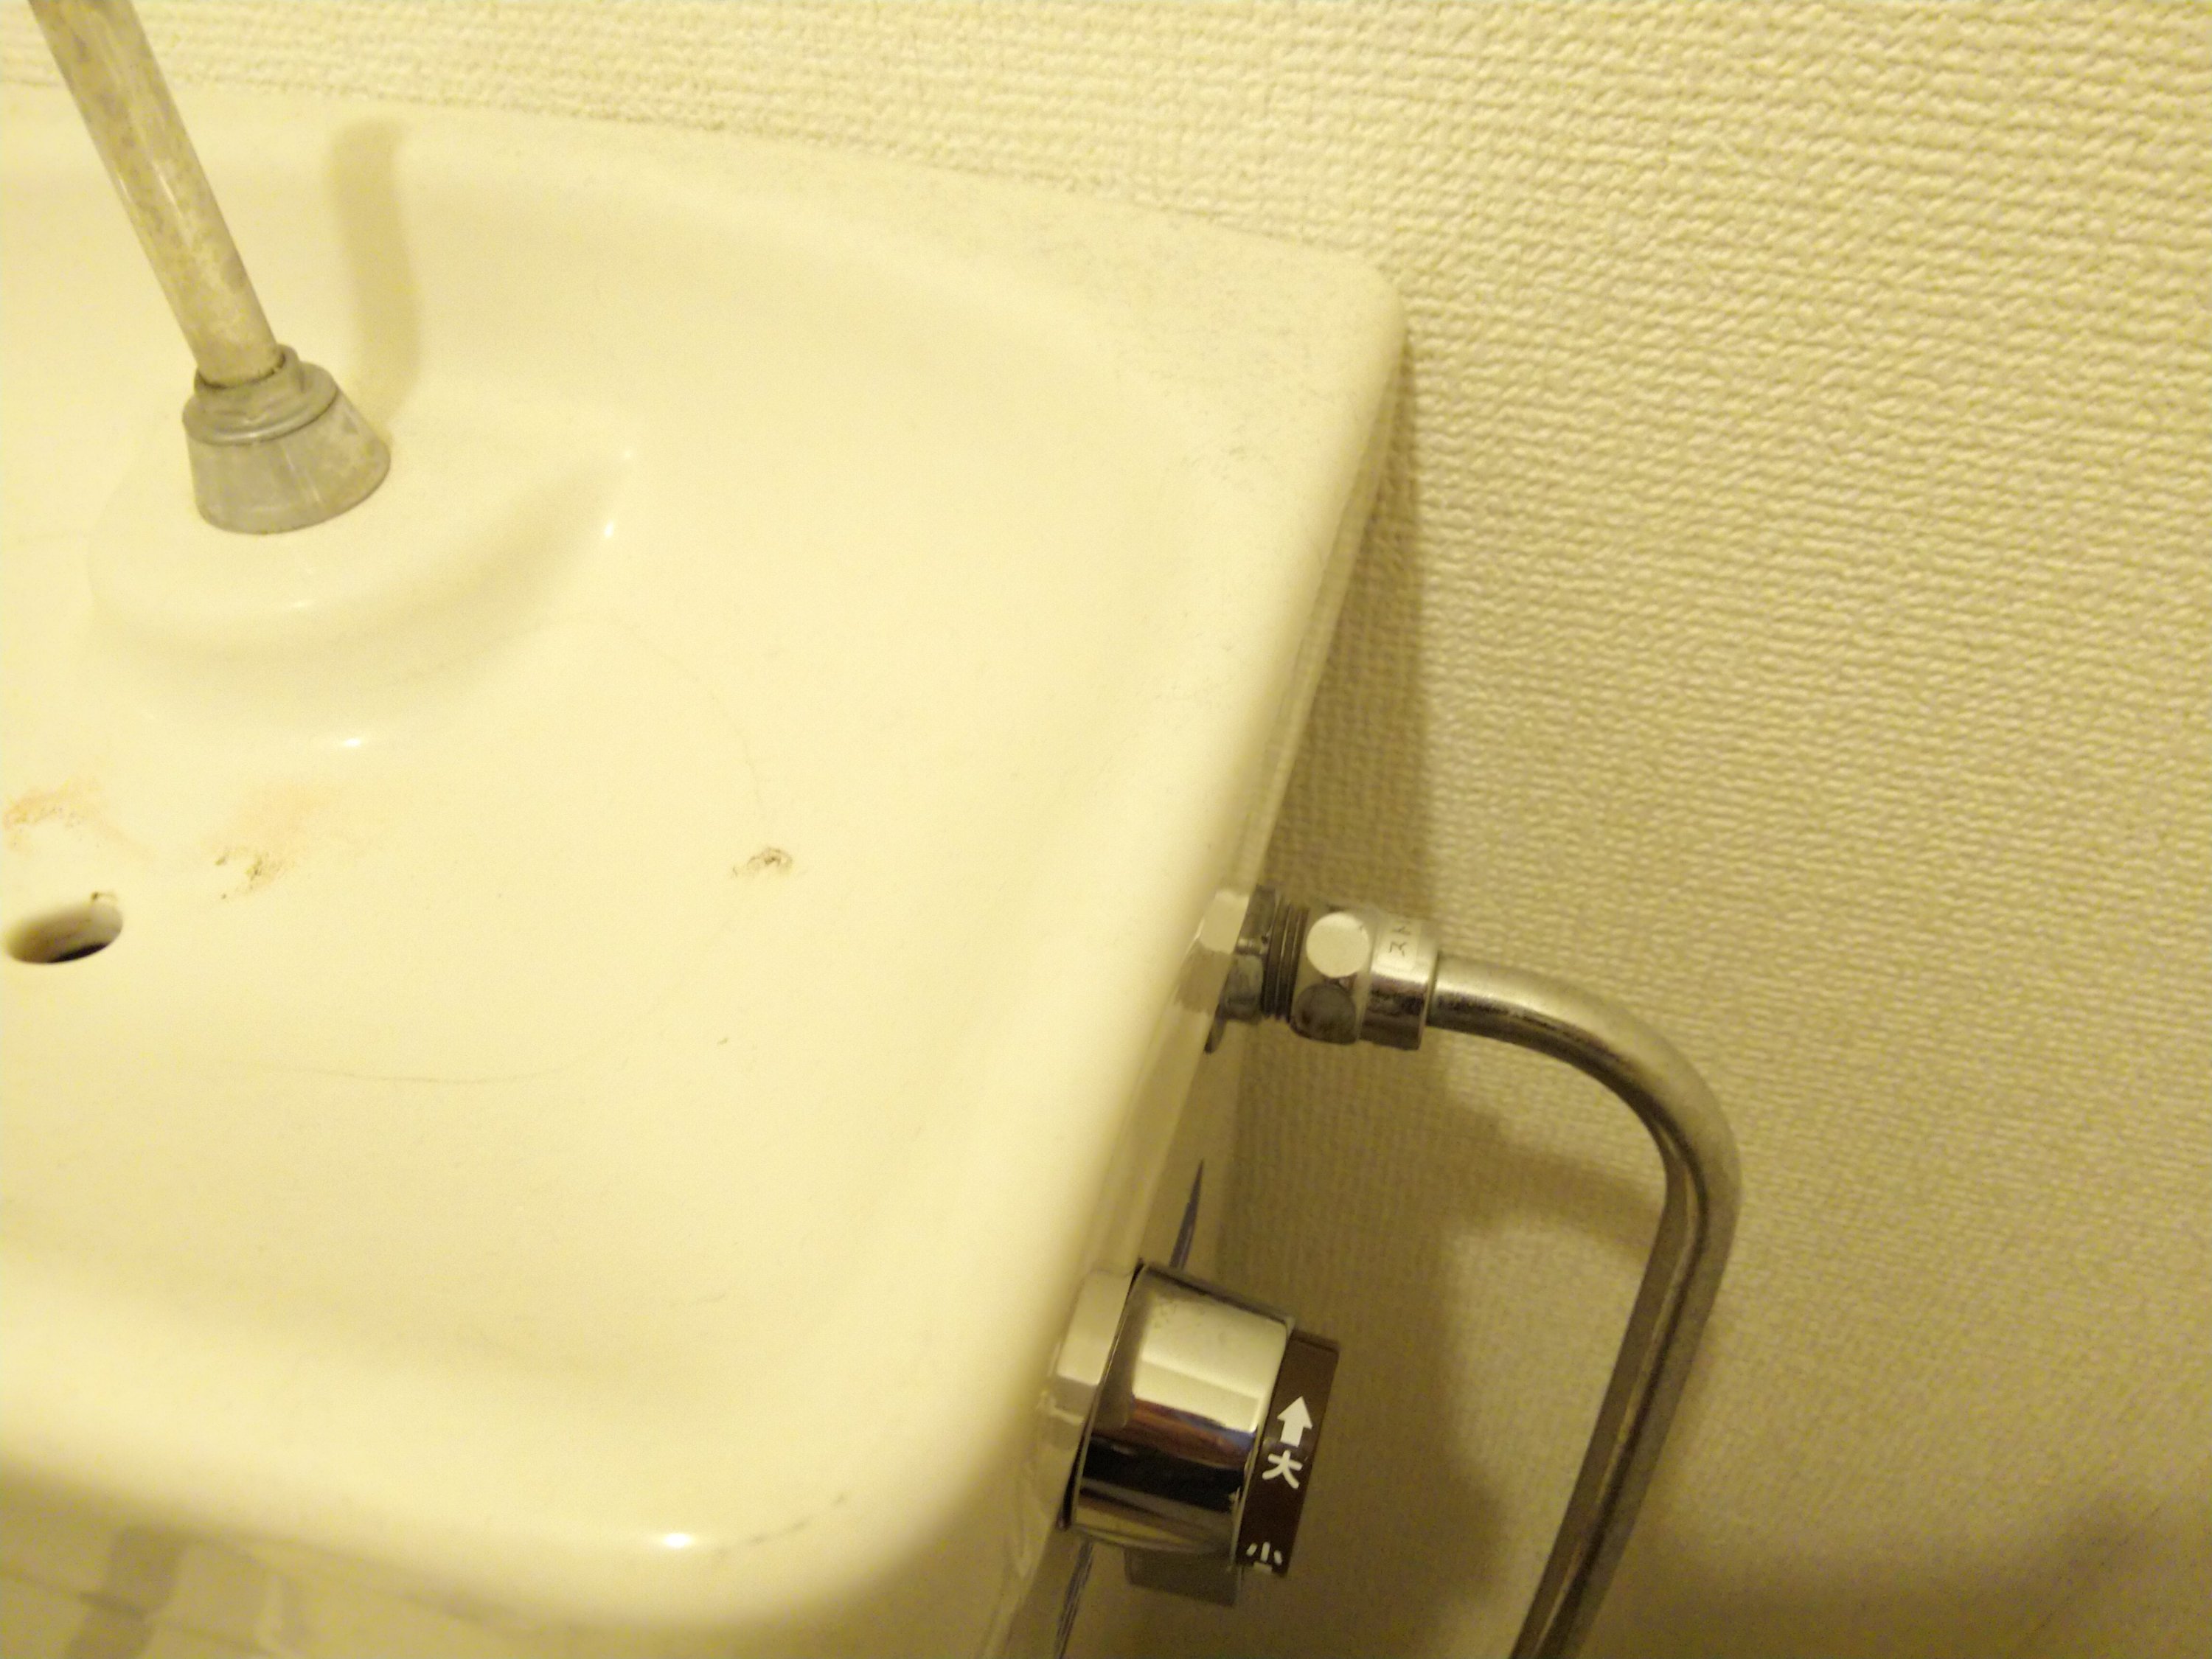 トイレの水が出ない アクア・アテンド さいたま市・水漏れ トイレつまり修理 漏水調査 給湯器